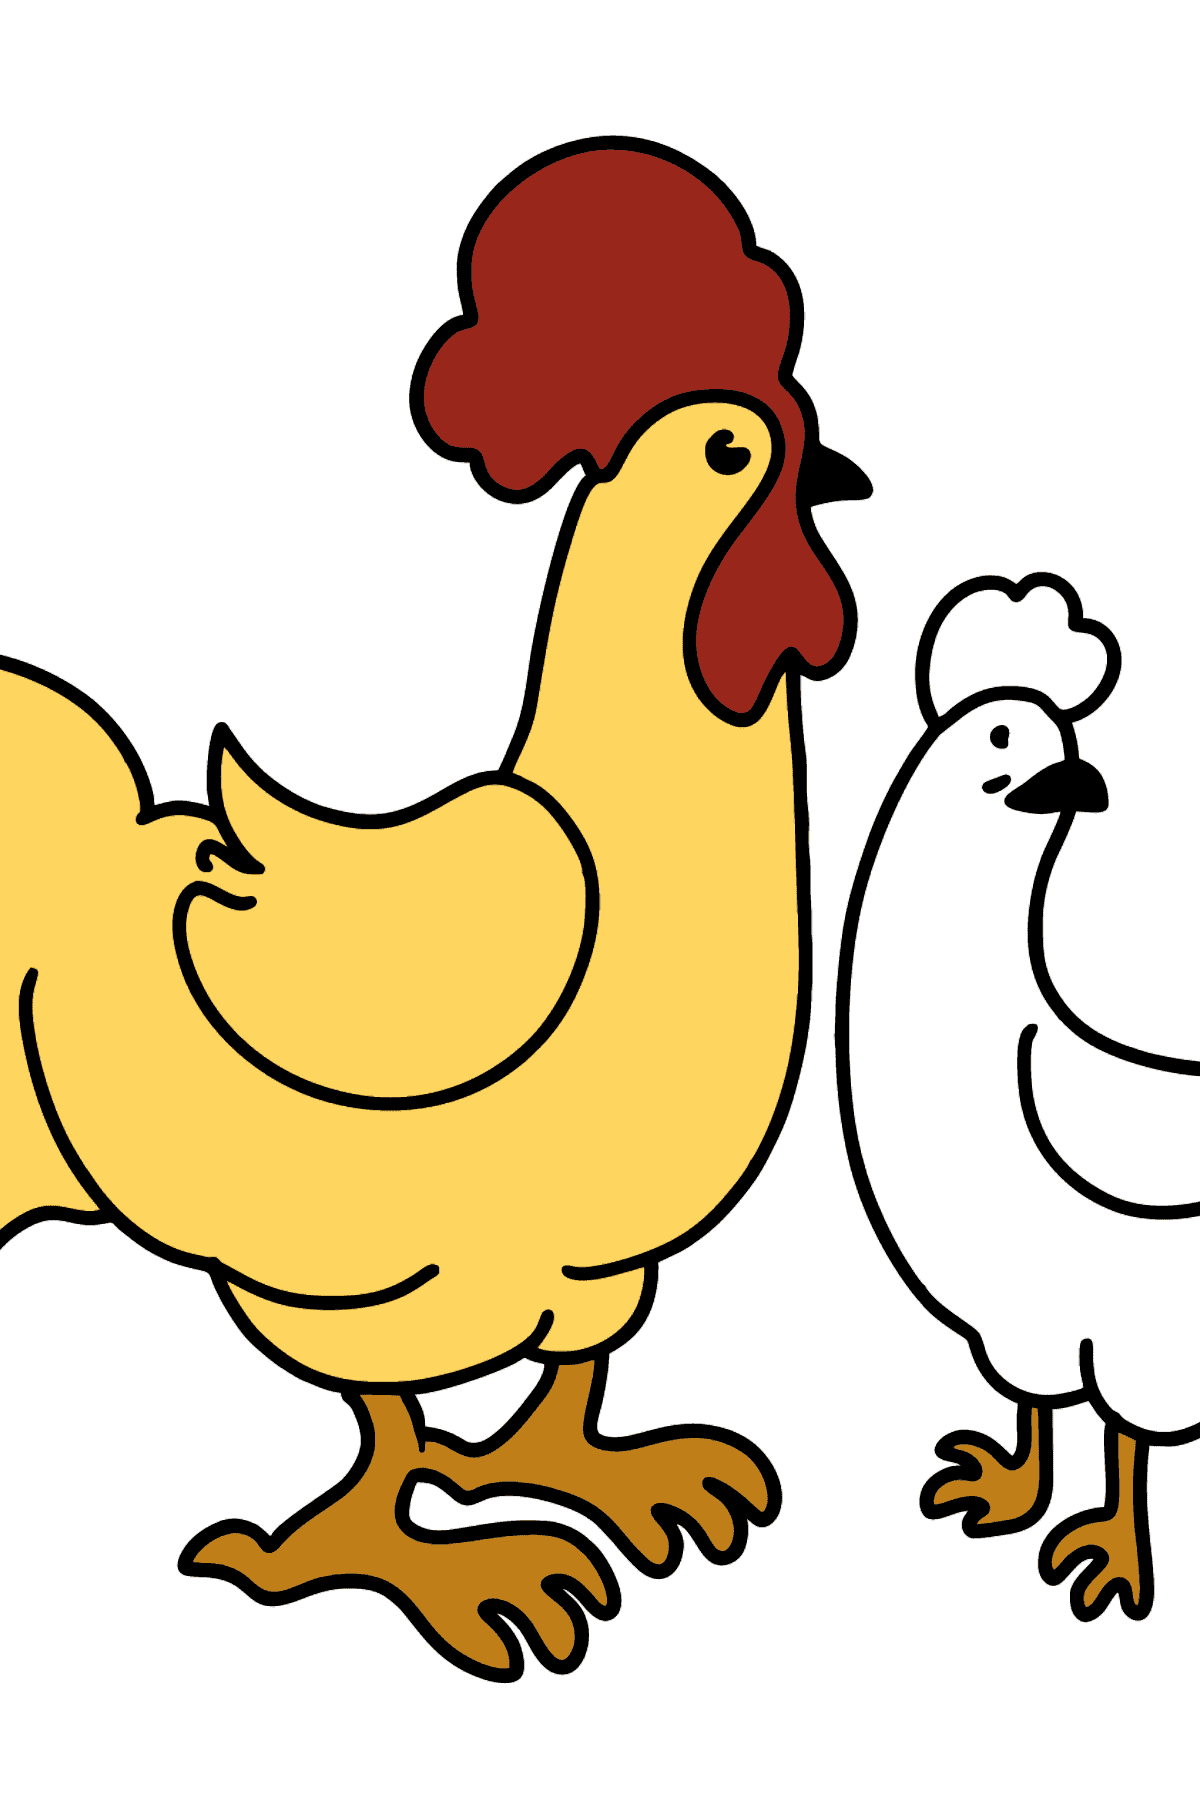 Tegning til farvning hane og høne - Tegninger til farvelægning for børn